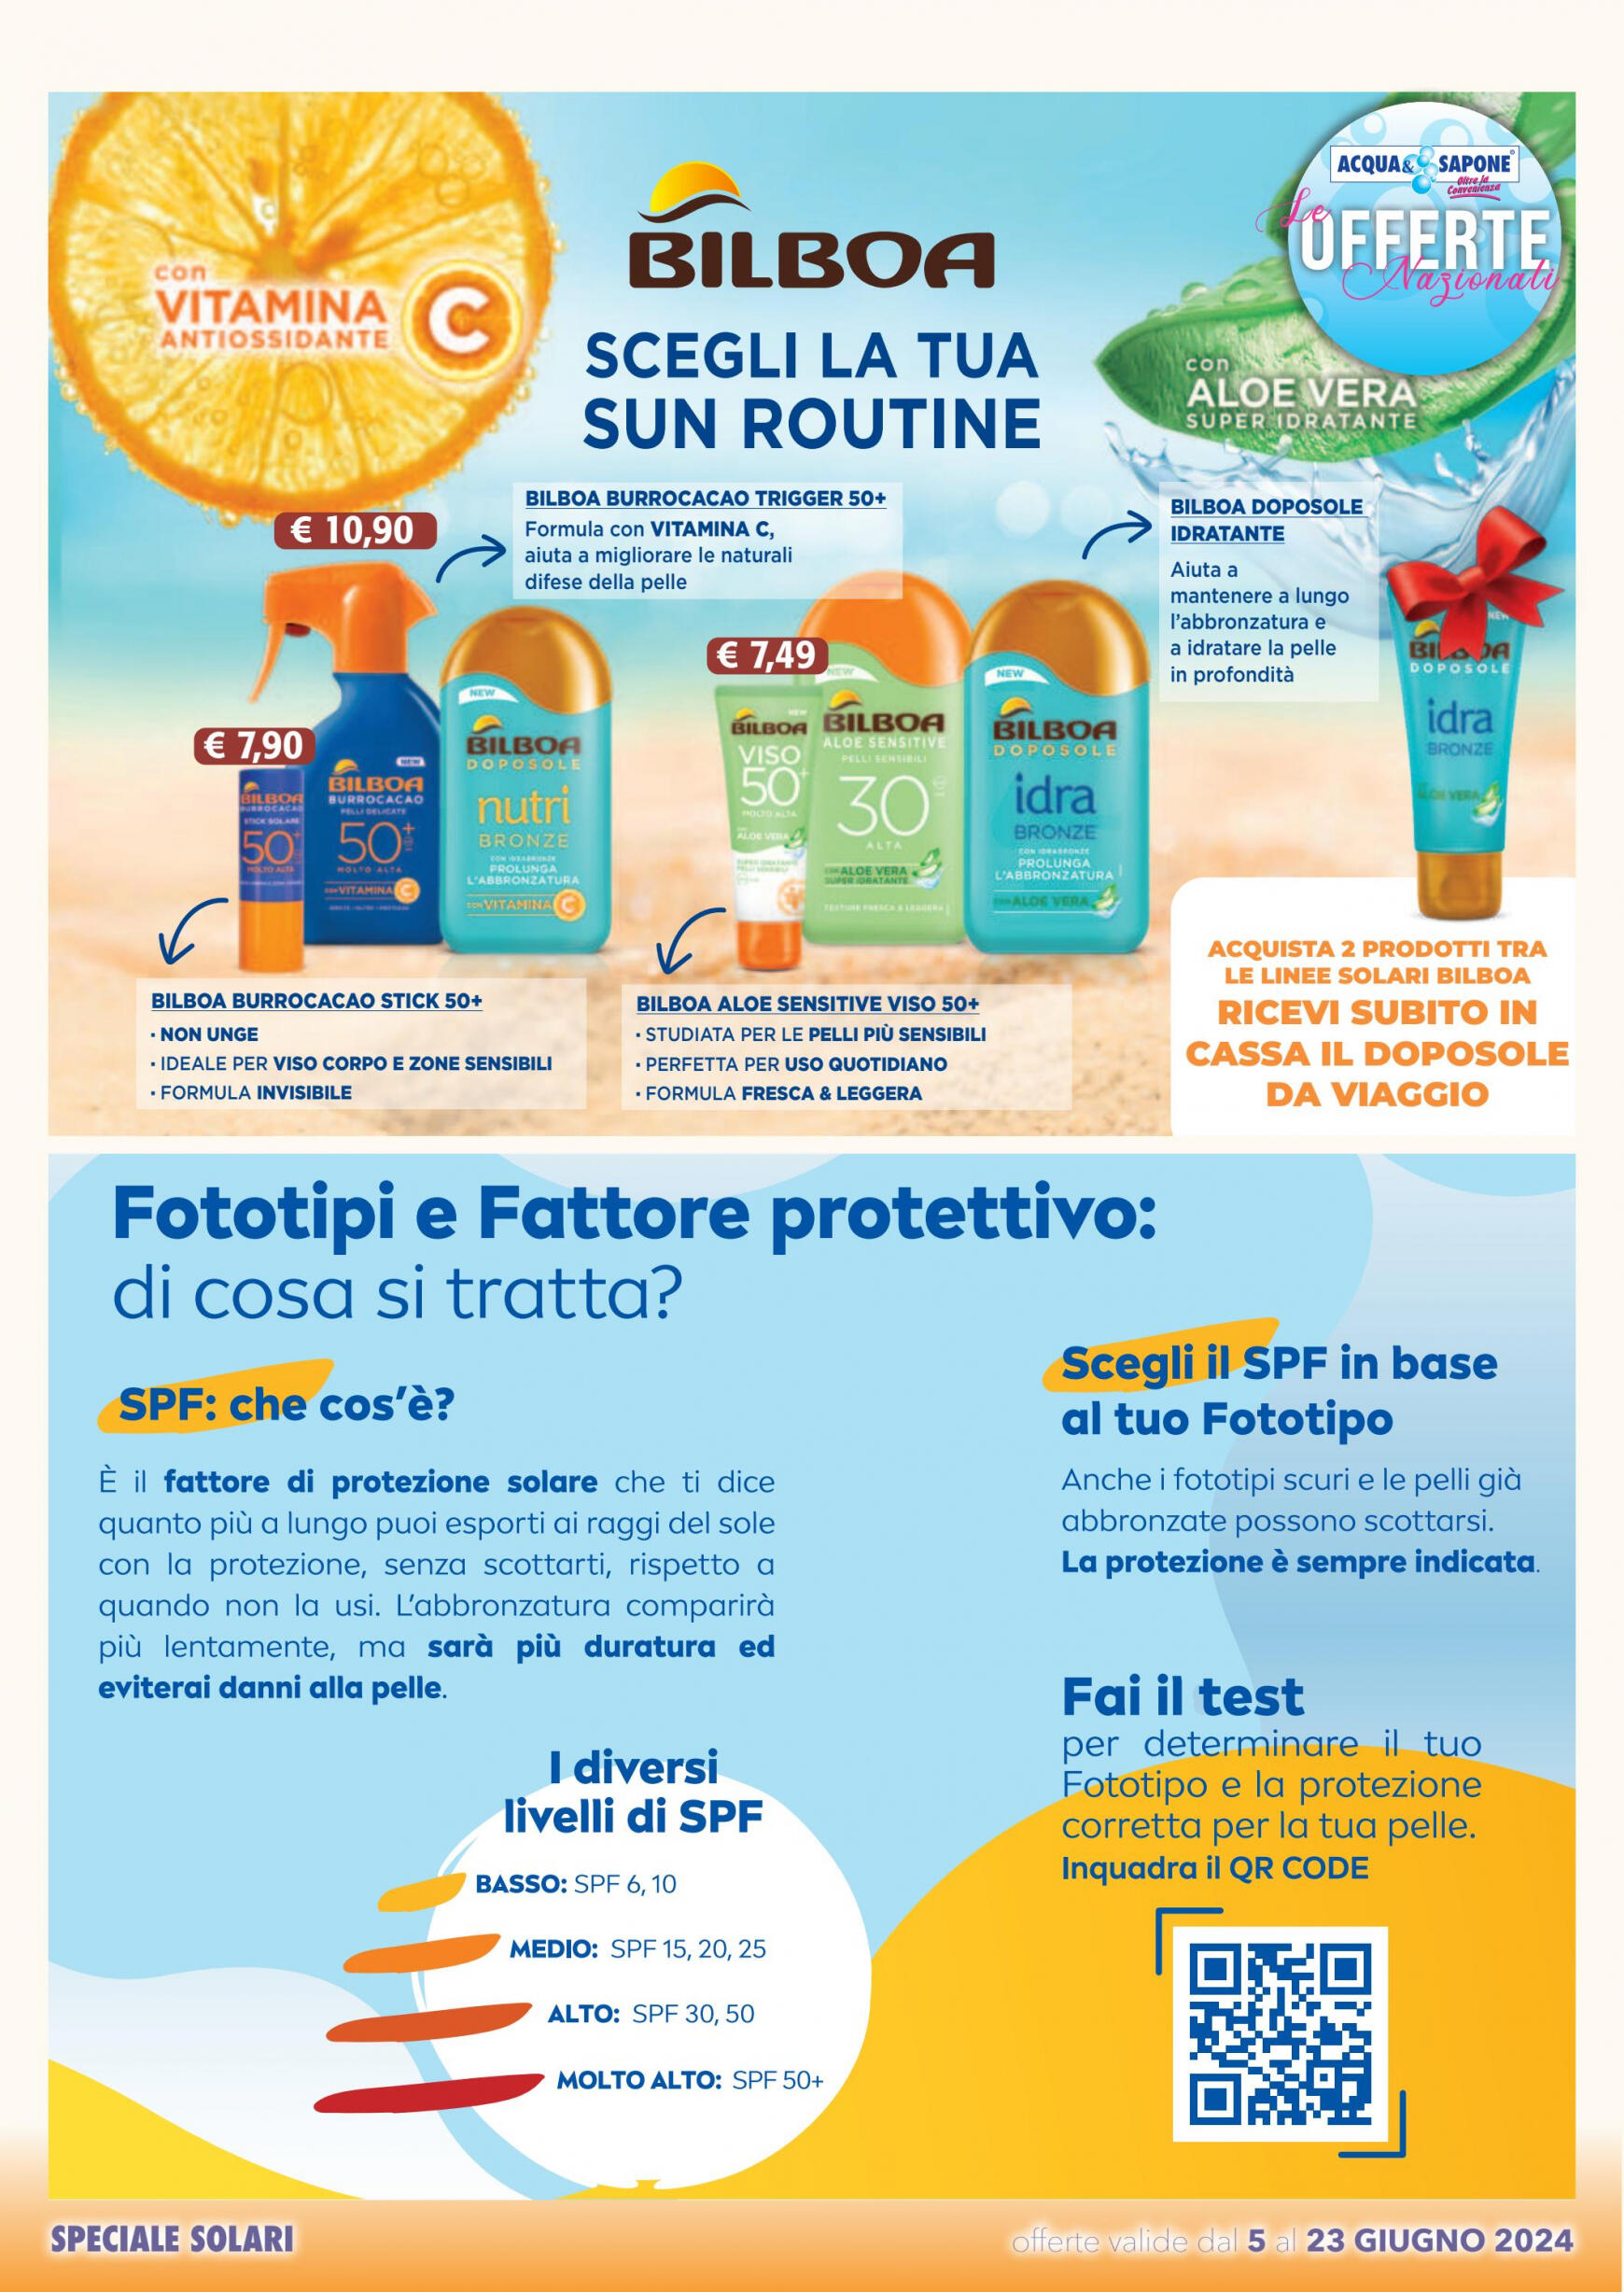 acqua-e-sapone - Nuovo volantino Acqua e Sapone 05.06. - 23.06. - page: 22